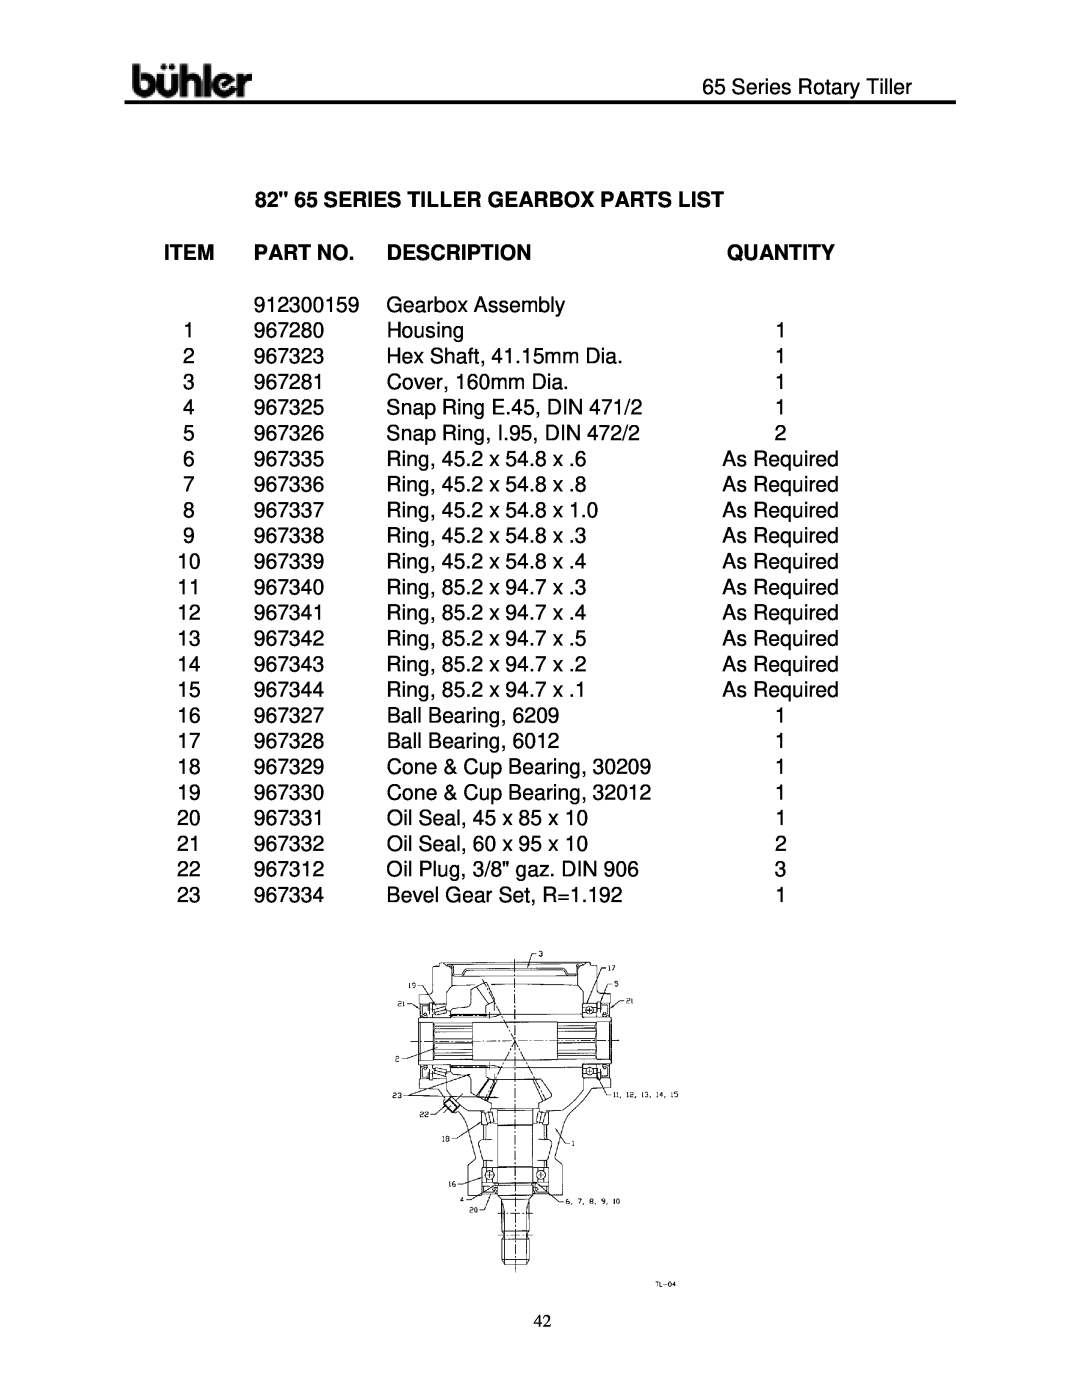 Buhler 65 Series warranty 82 65 SERIES TILLER GEARBOX PARTS LIST, Description, Quantity 